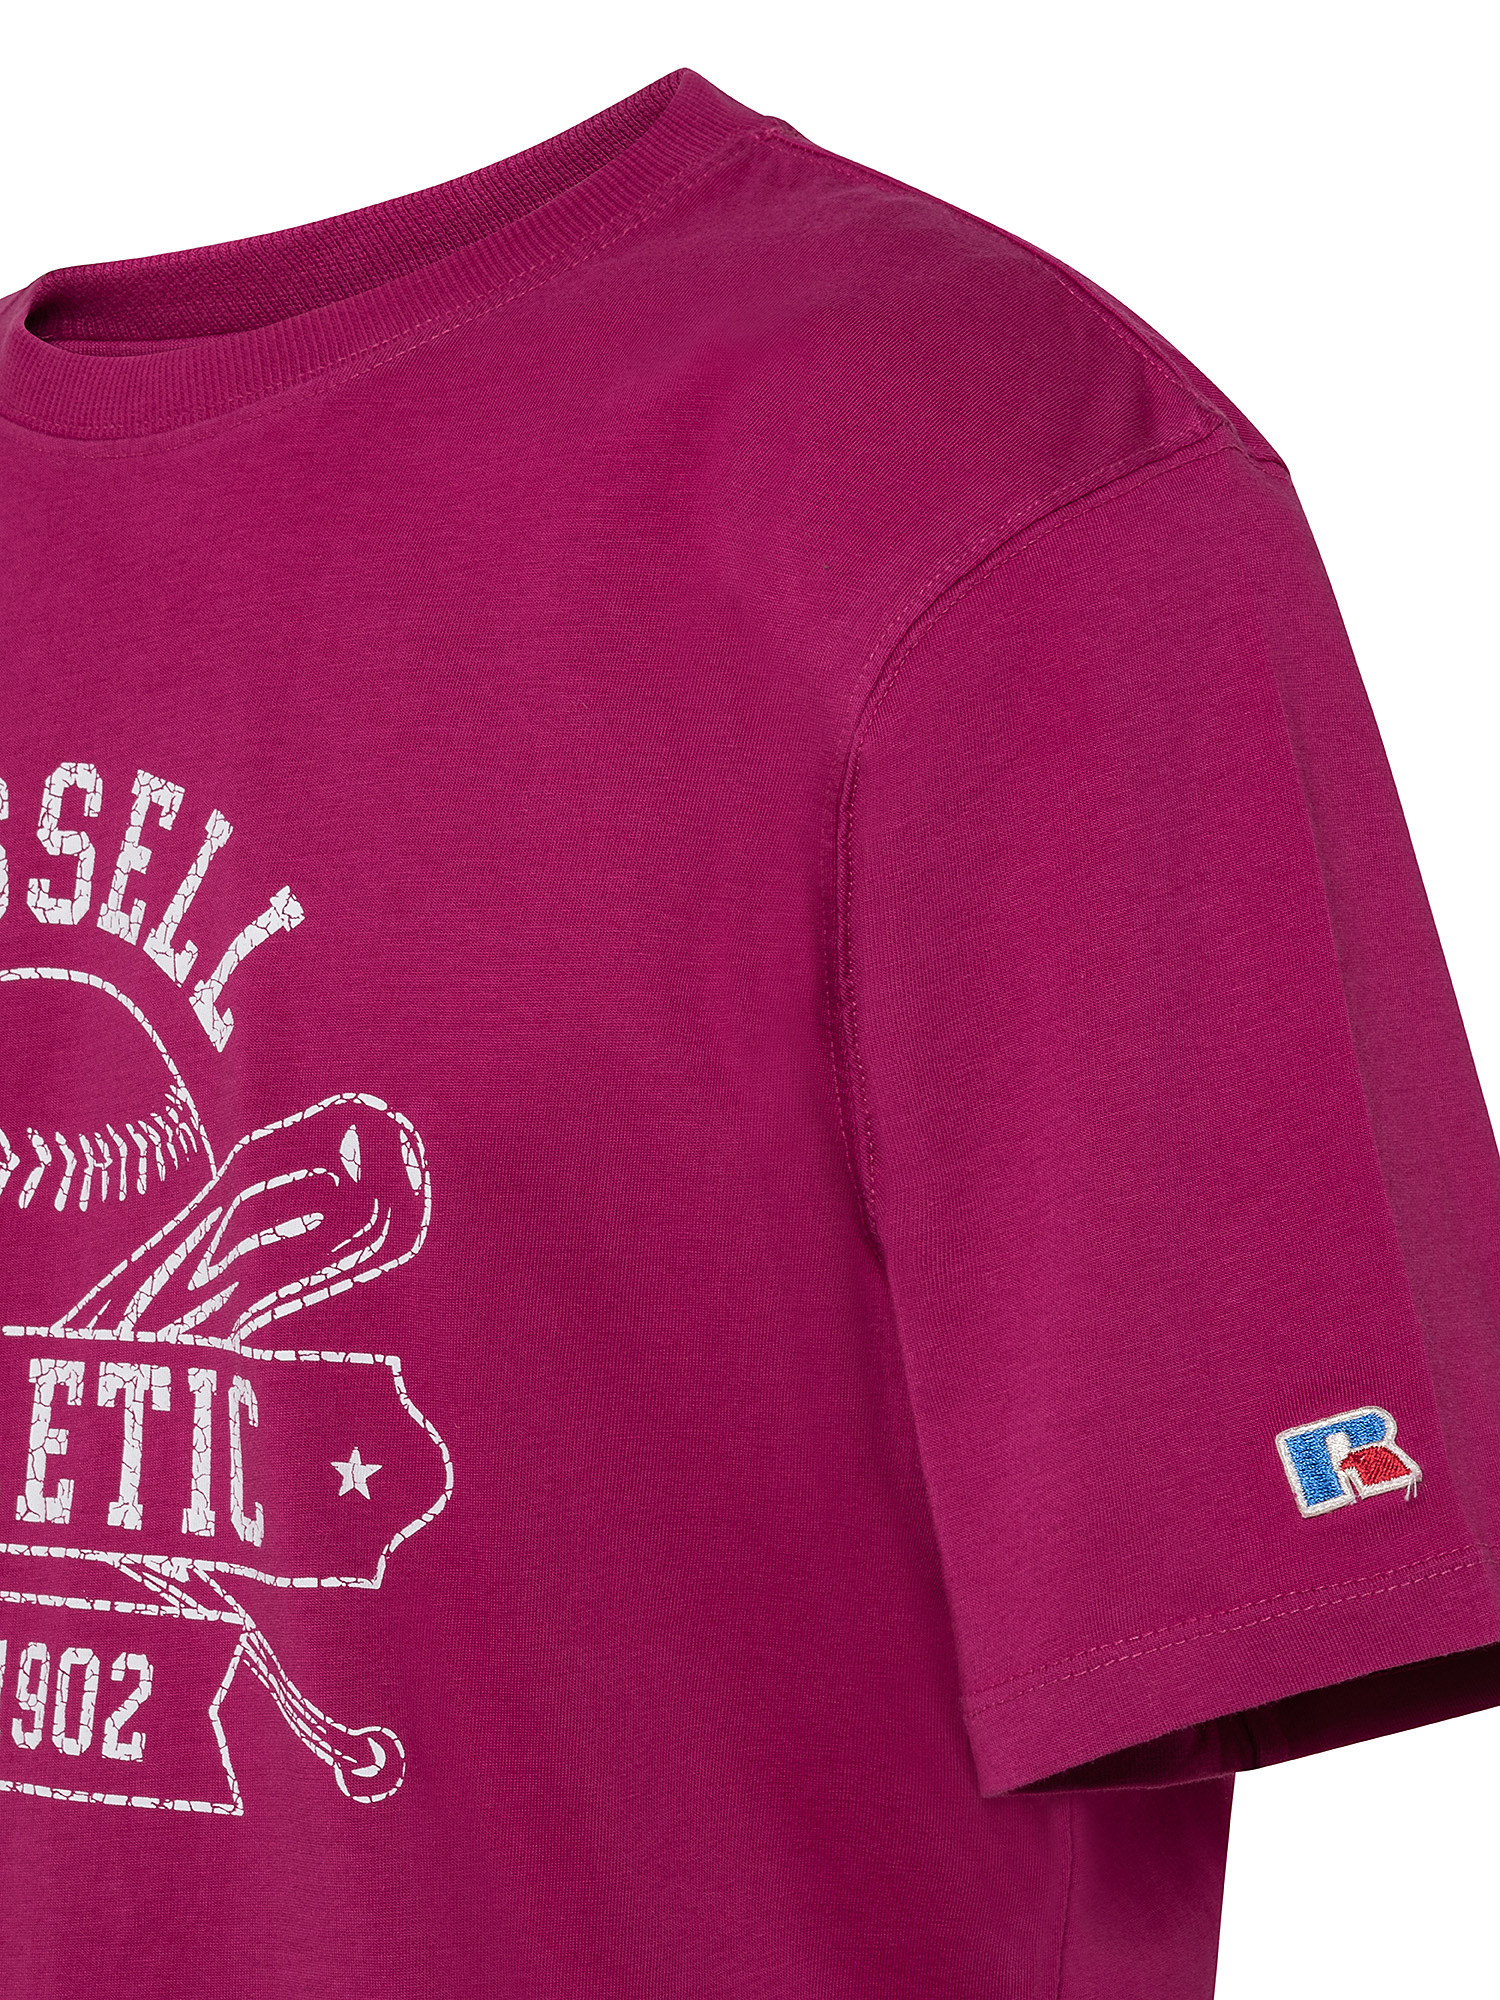 Tony Baseball T-Shirt, Pink Fuchsia, large image number 2